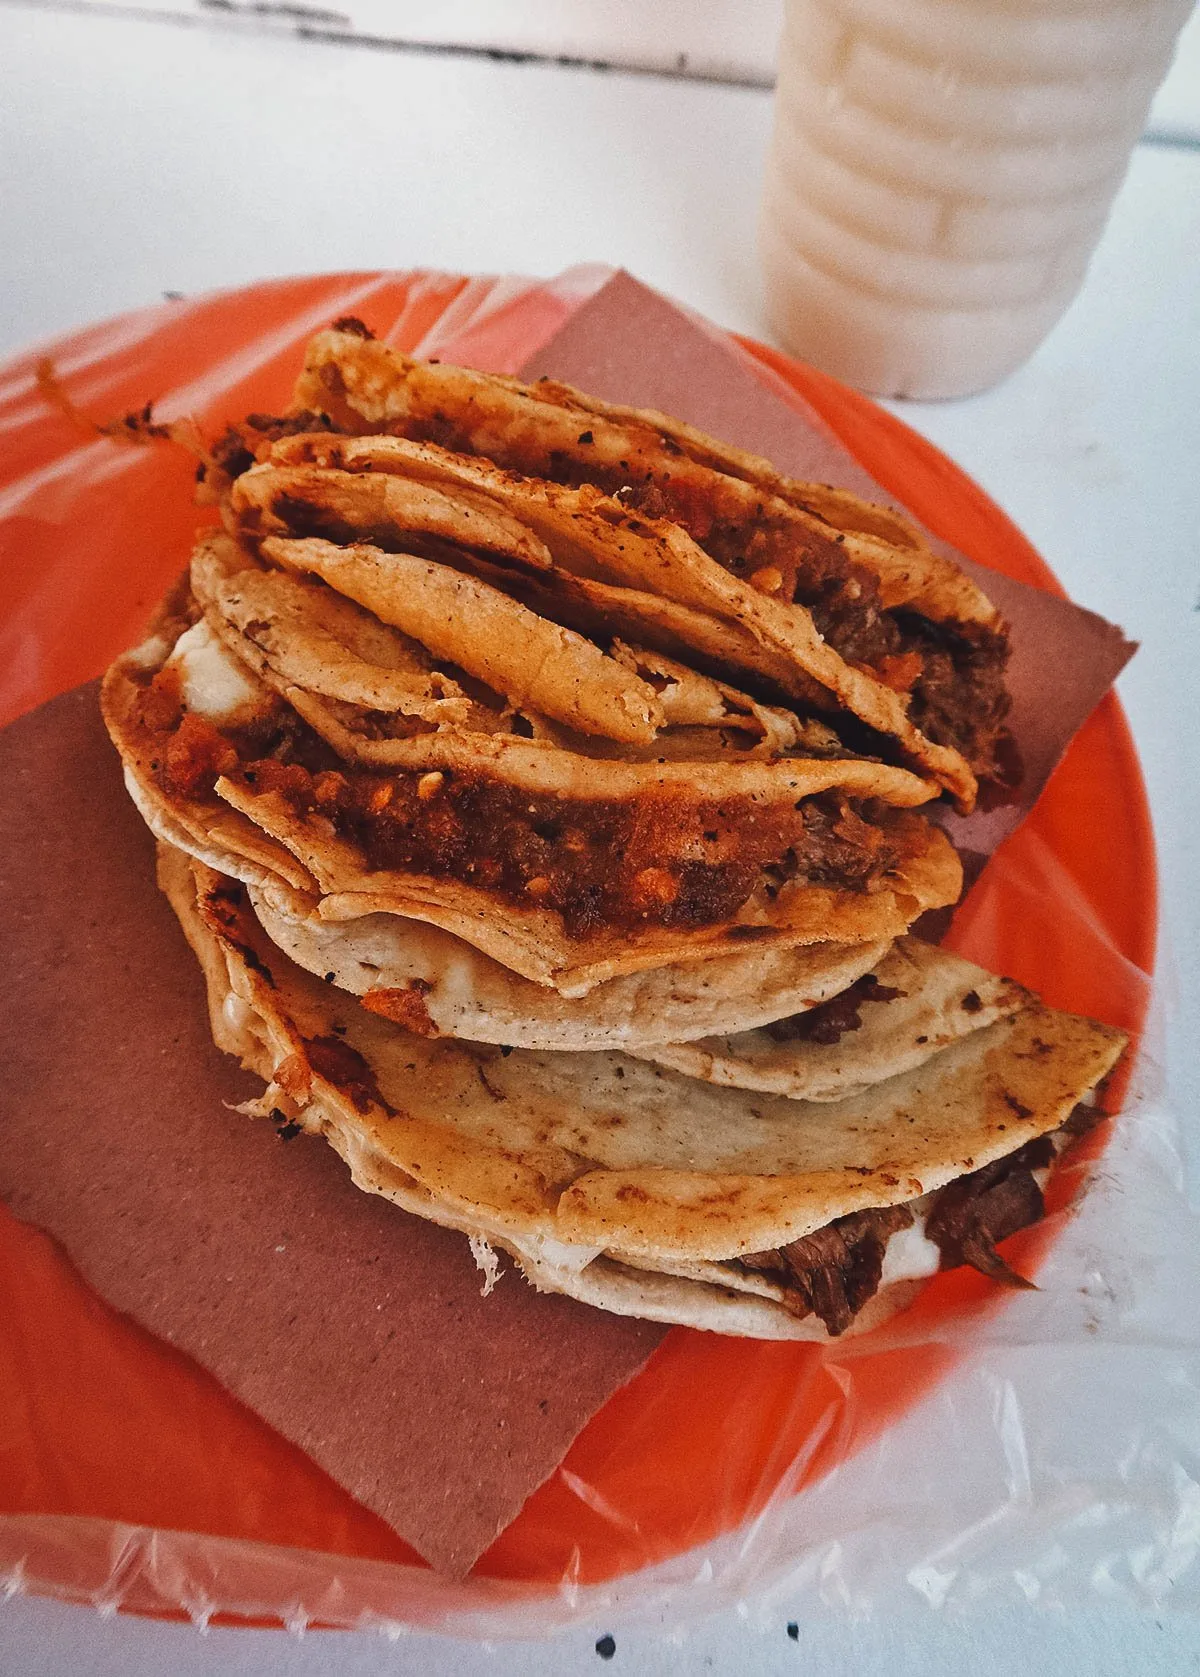 Quesabirria tacos at El Compa